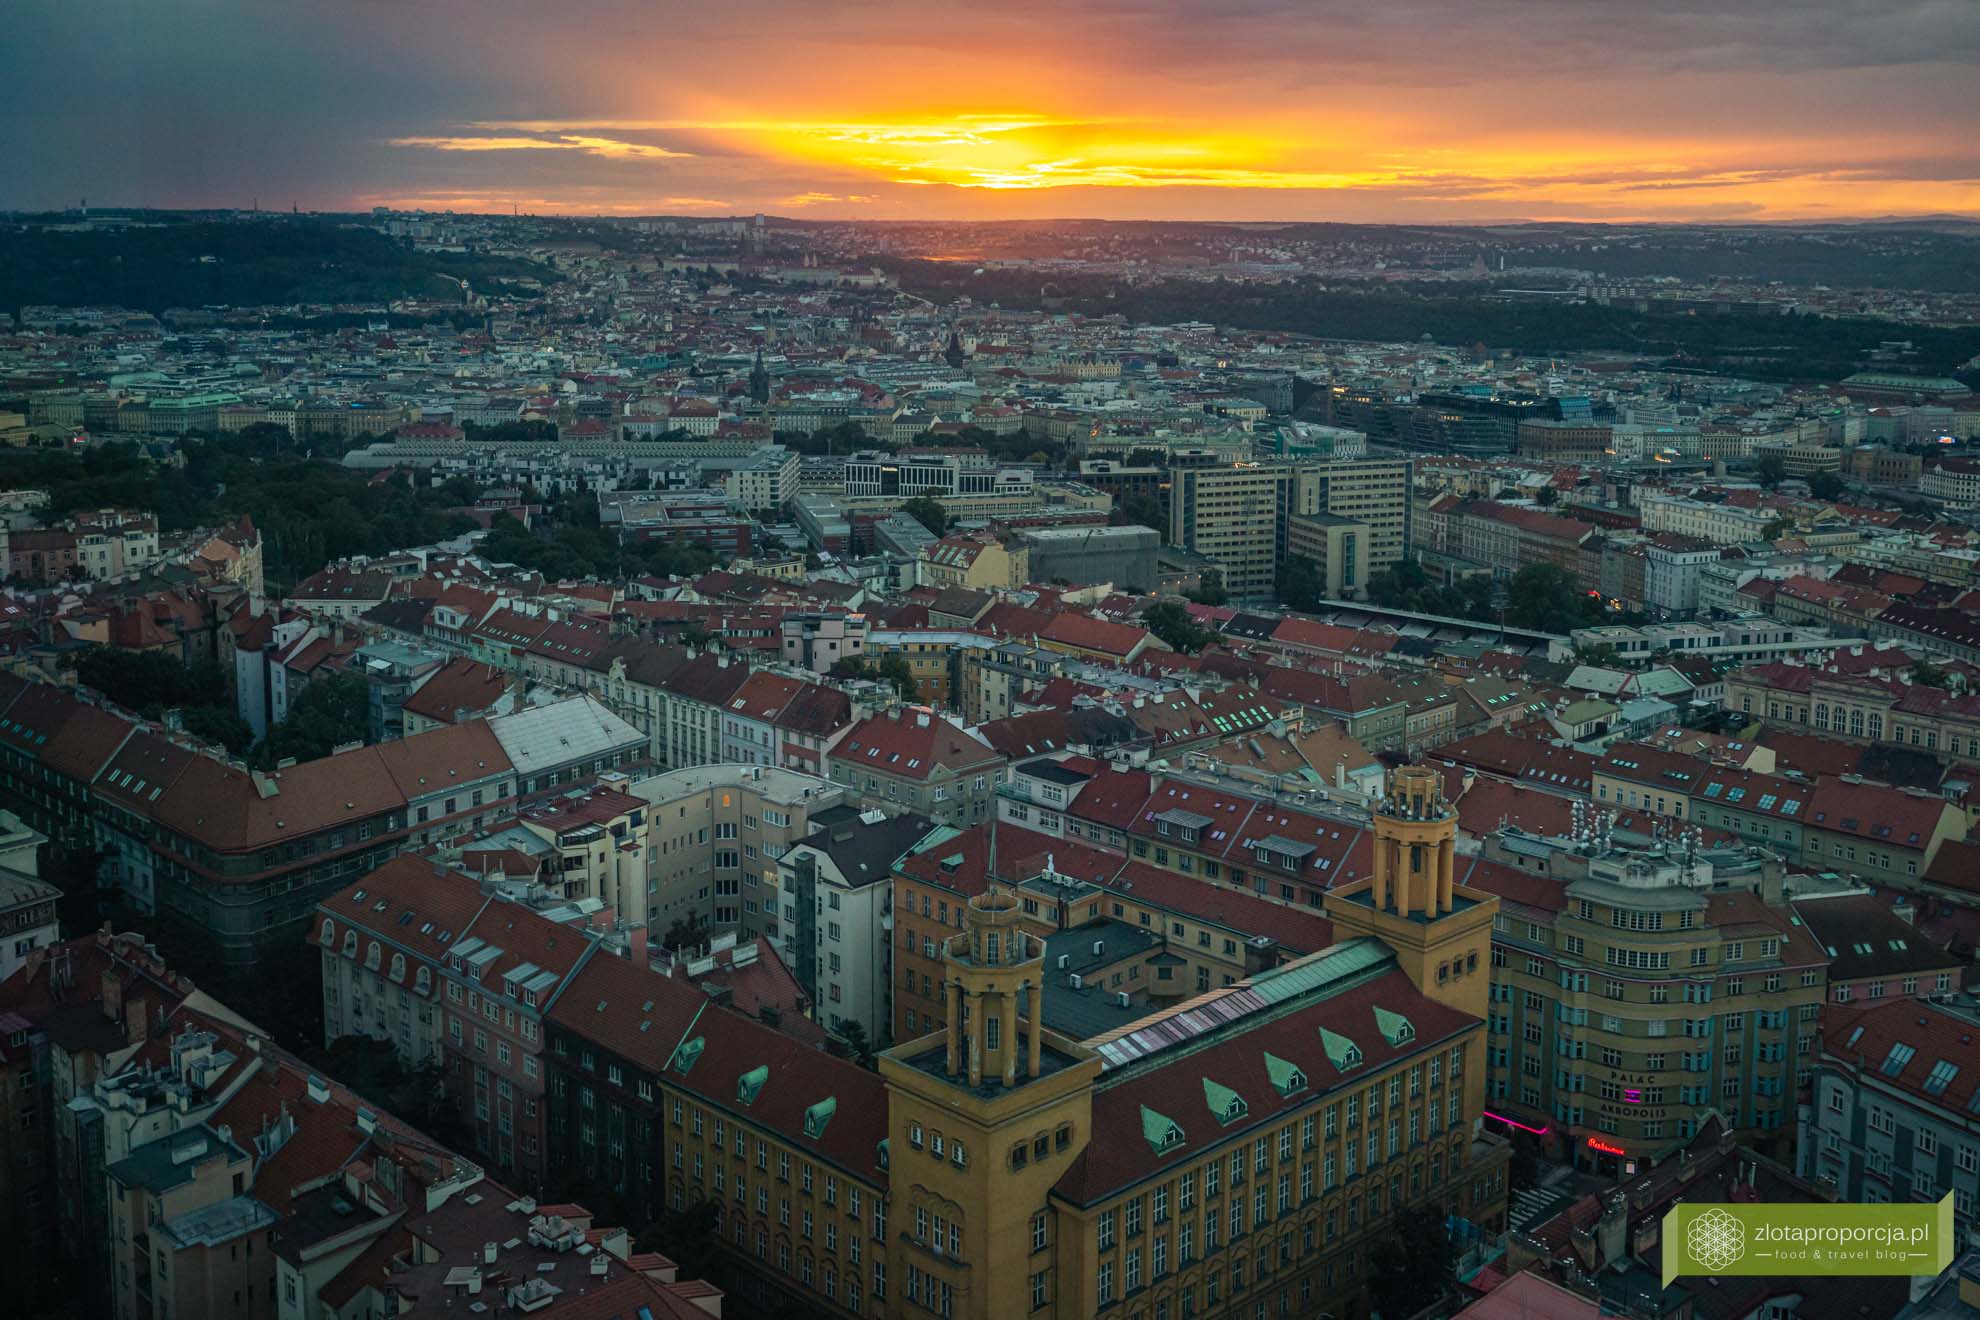 Zizkov; Praga; atrakcje Pragi; co zobaczyć w Pradze; Czechy, atrakcje Zizkova, co zobaczyć na Zizkovie; Žižkov; Žižkov atrakcje; wieża telewizyjna Zizkov; 